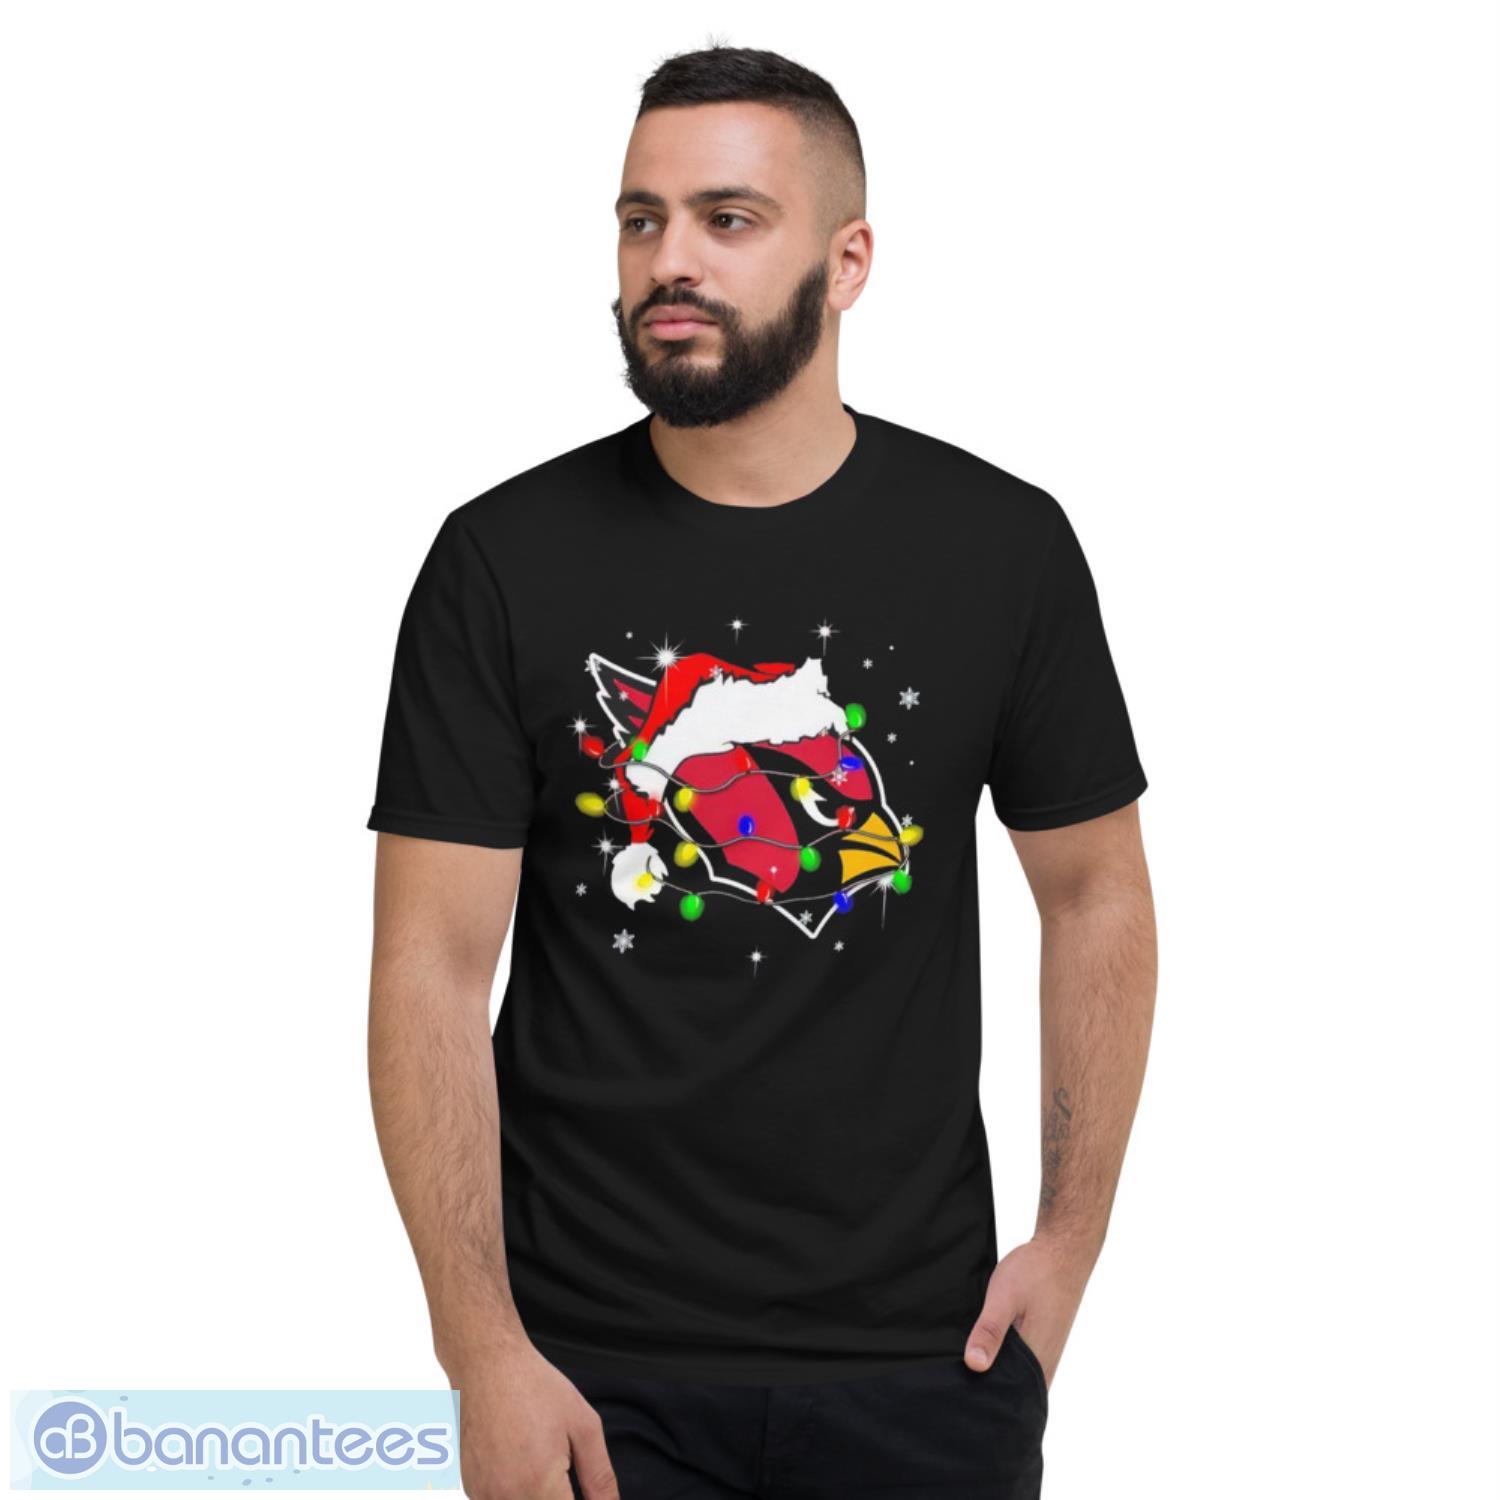 Arizona Cardinals Santa hat Christmas shirt - Banantees